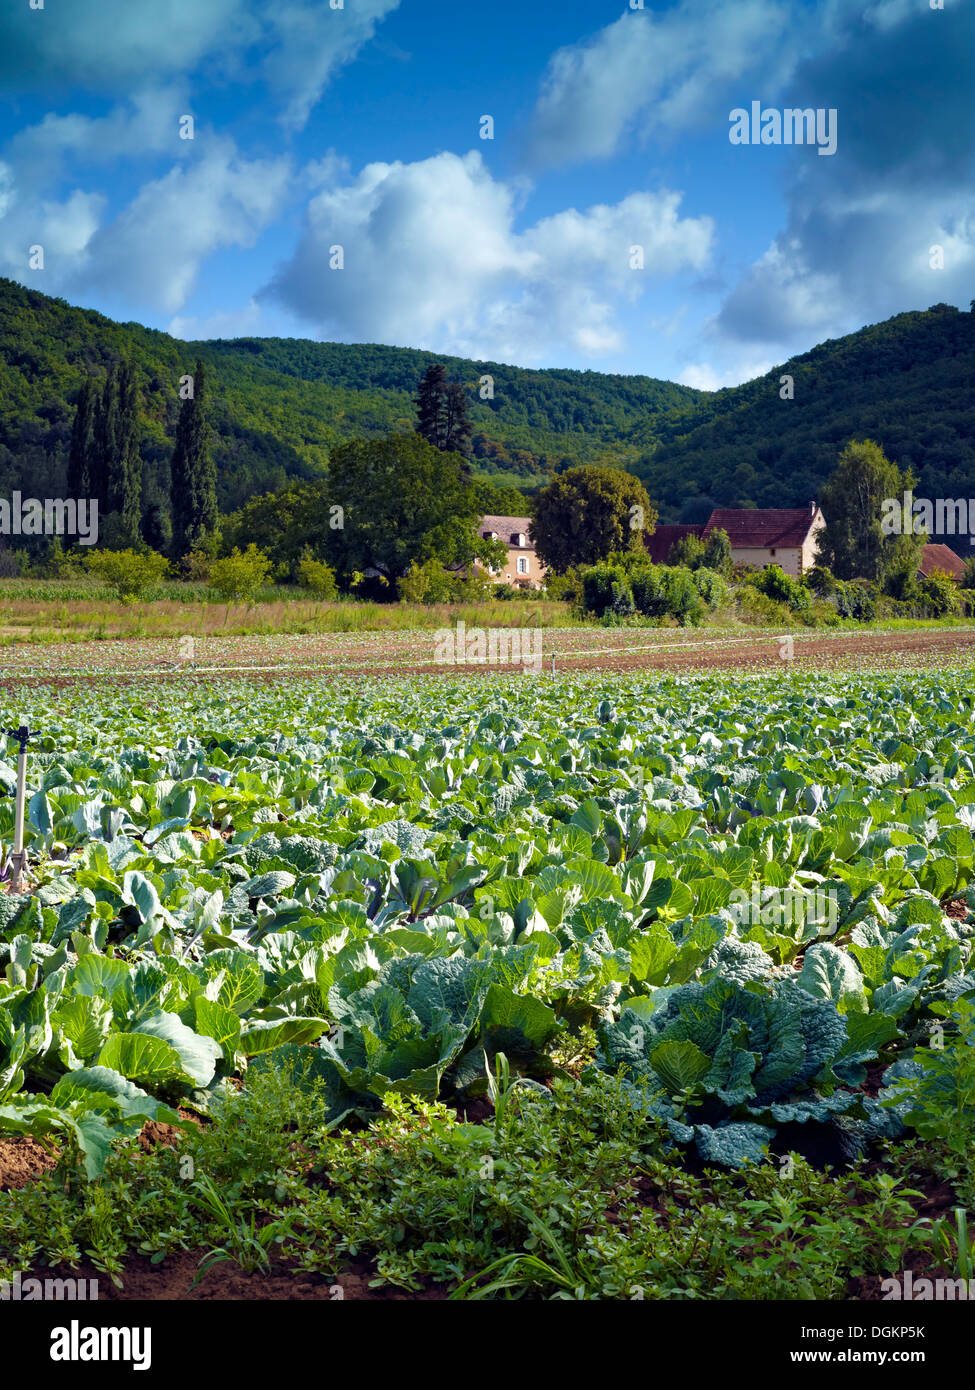 A view of fertile farmland in the Dordogne. Stock Photo